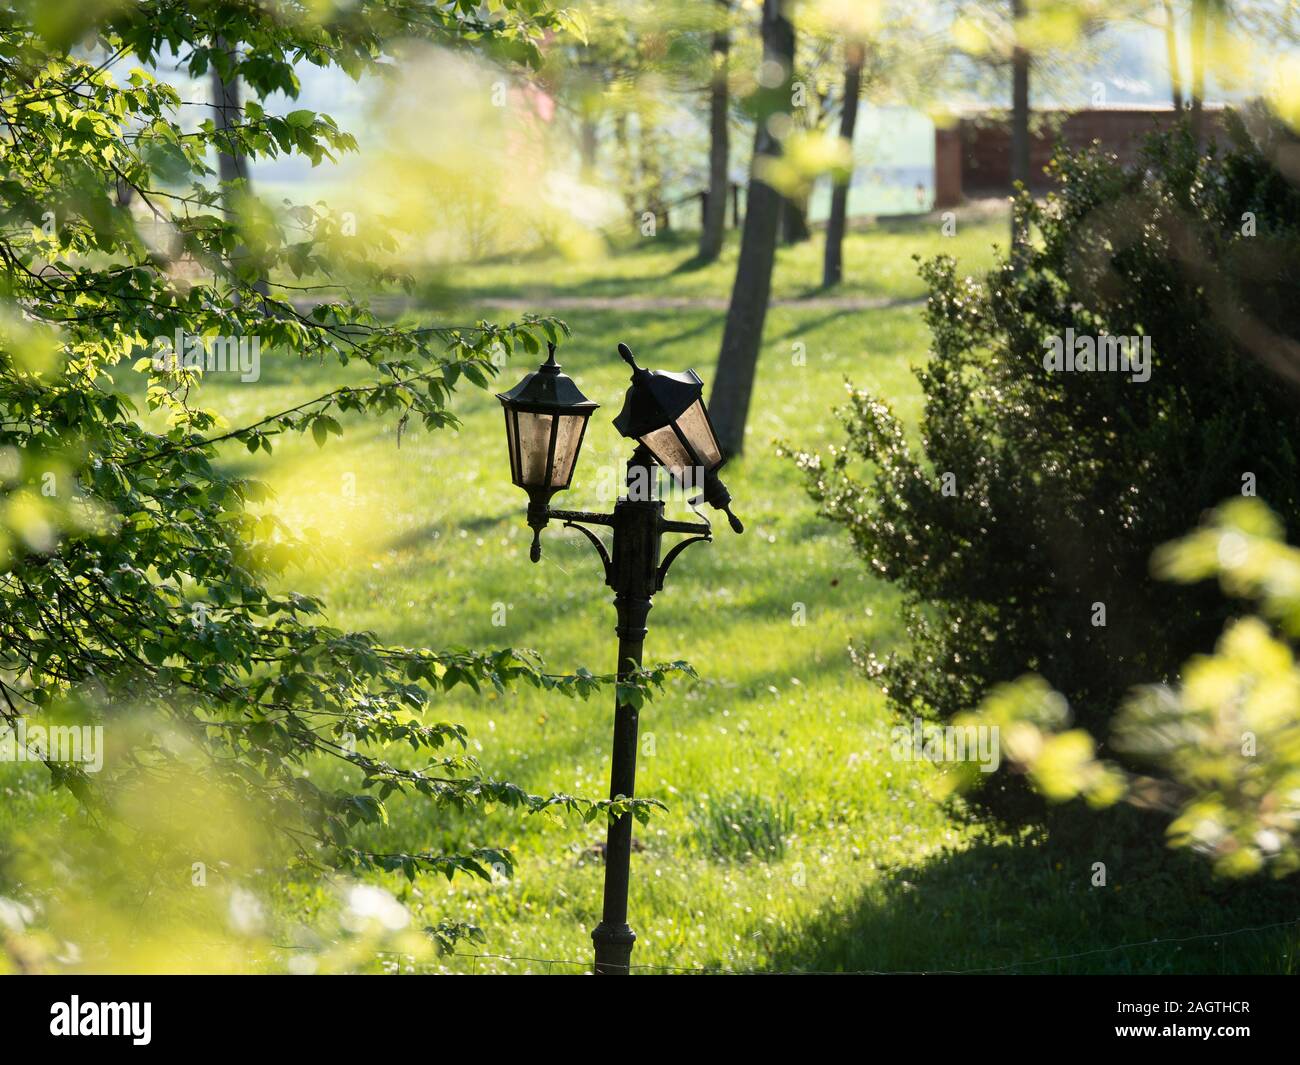 Vintage lampione o alta lampada o lampione elettrico con alberi verdi e un parco o giardino sullo sfondo Foto Stock